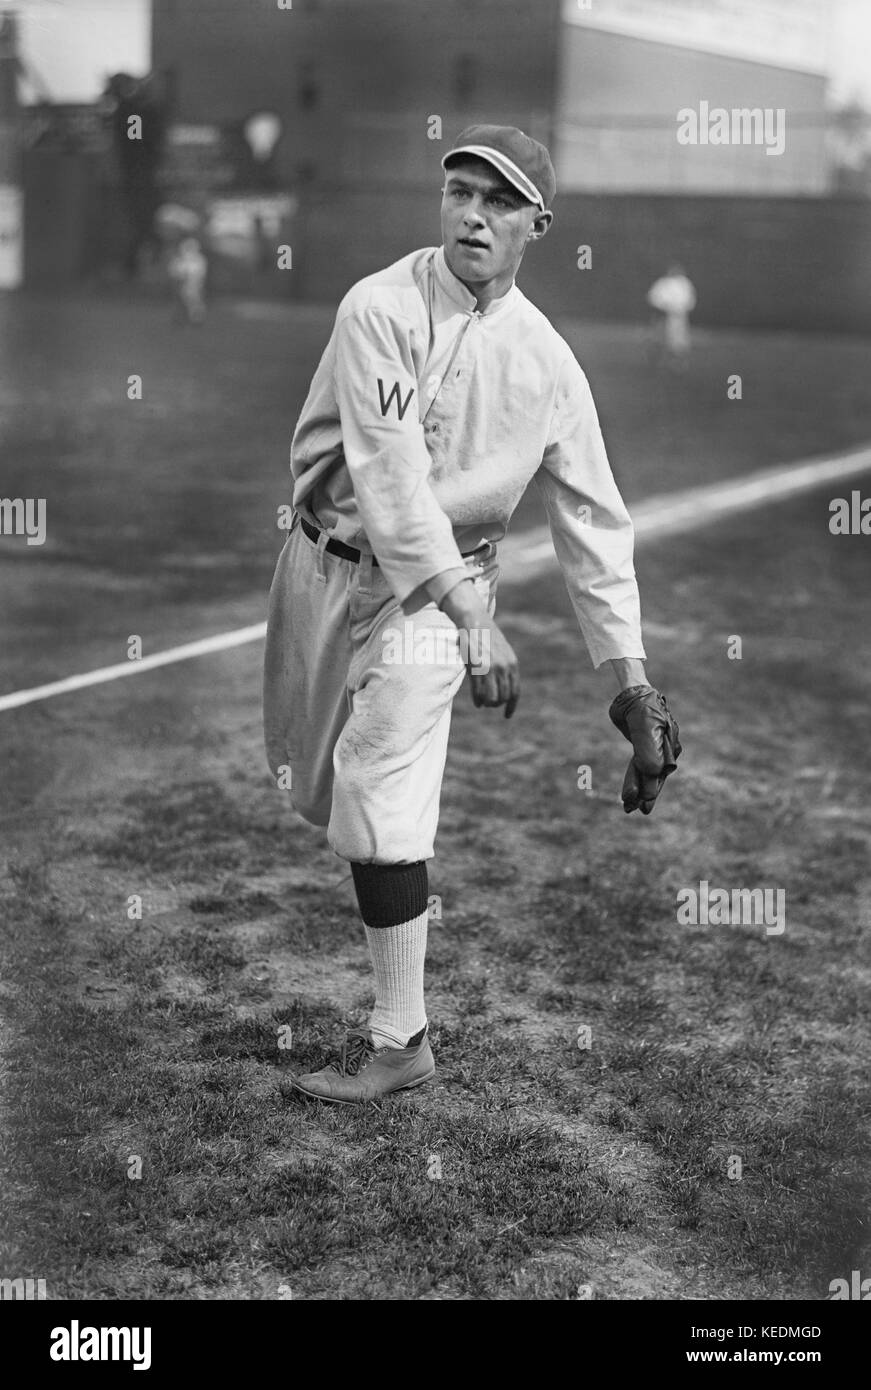 Joe Engel,Major League Baseball Player,Washington Senators,Harris & Ewing,1913 Stock Photo